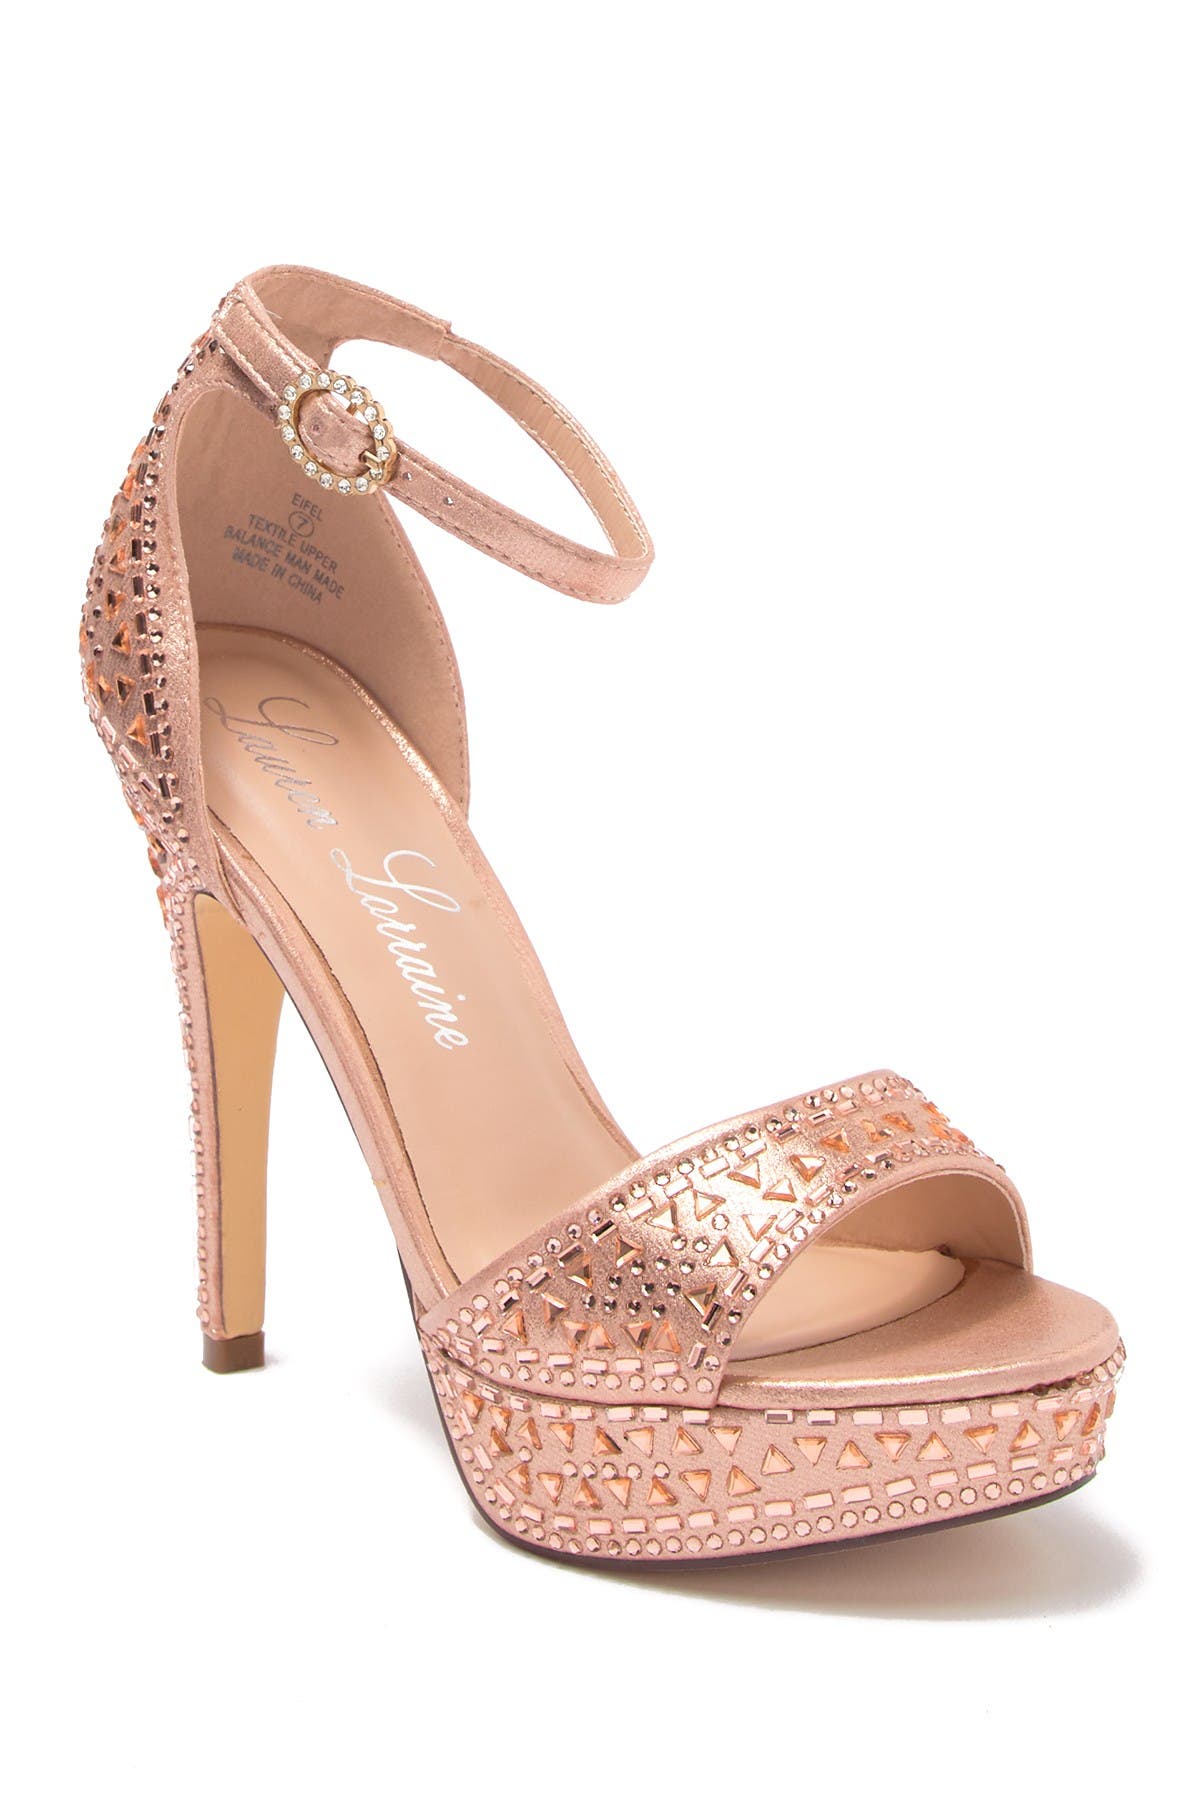 lauren lorraine rose gold shoes